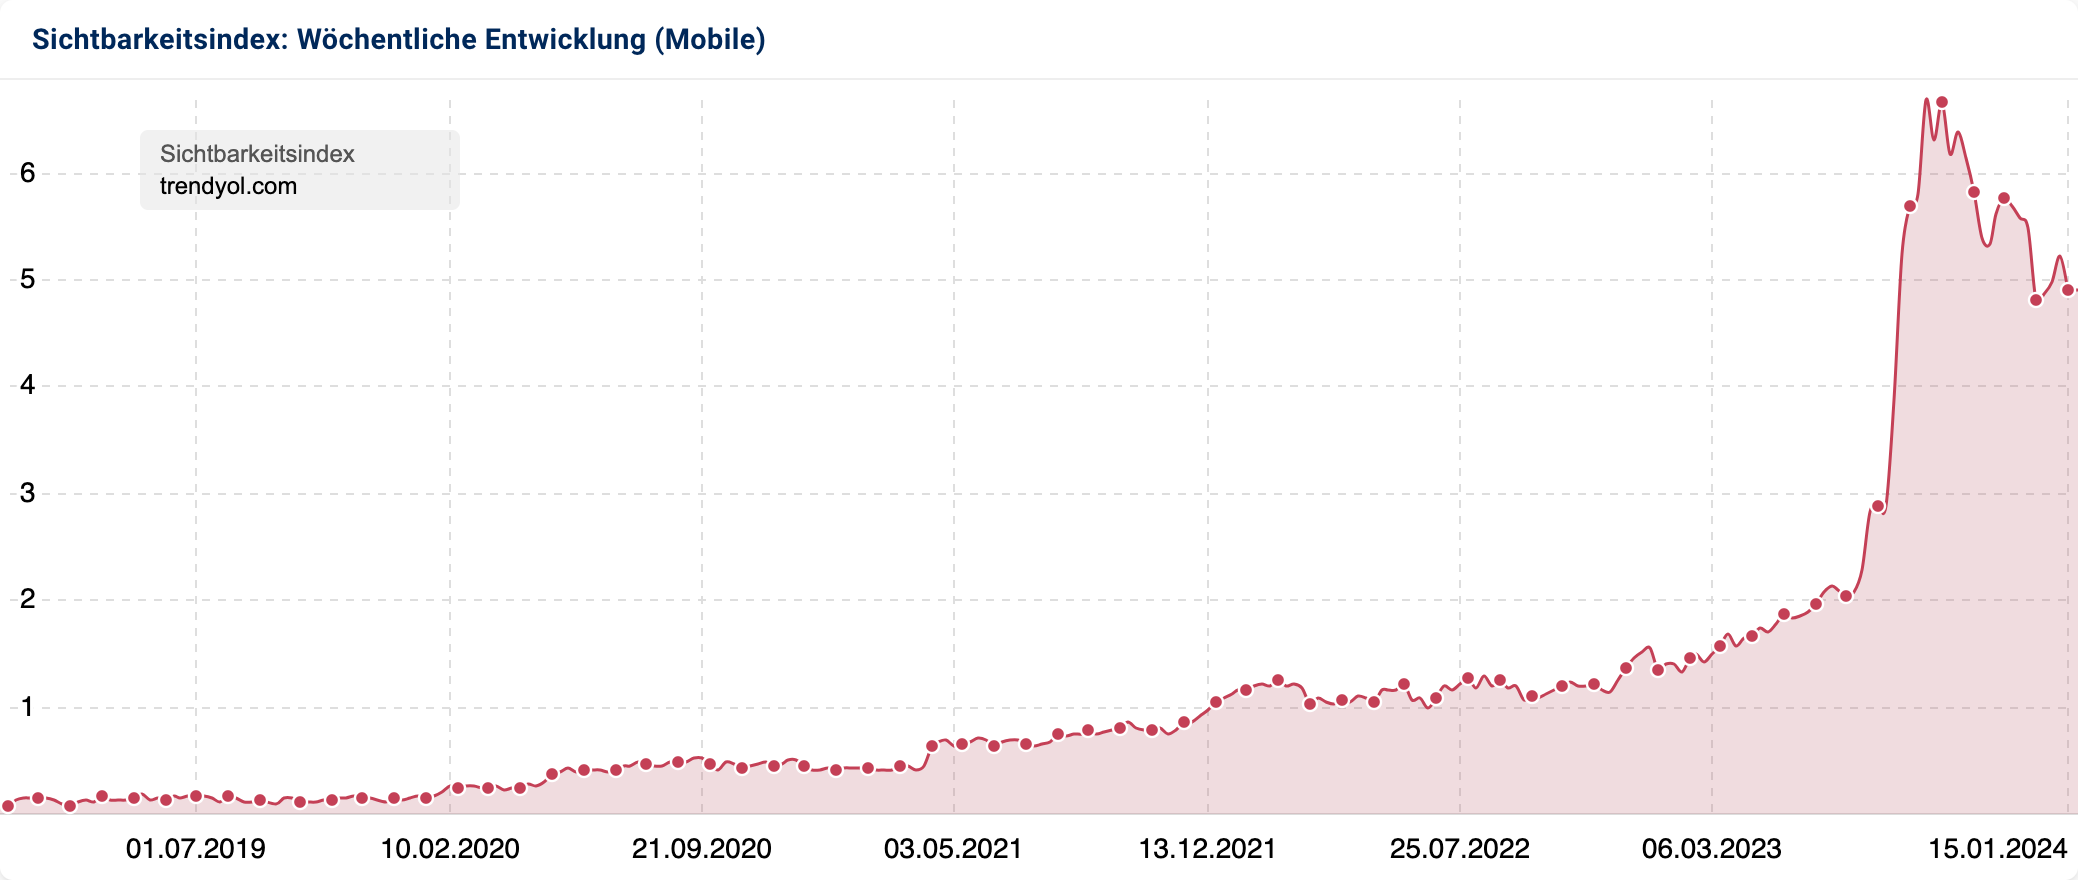 Die wöchentliche Entwicklung des mobilen Sichtbarkeitsindex der Domain trendyol.com der letzten 5 Jahre.